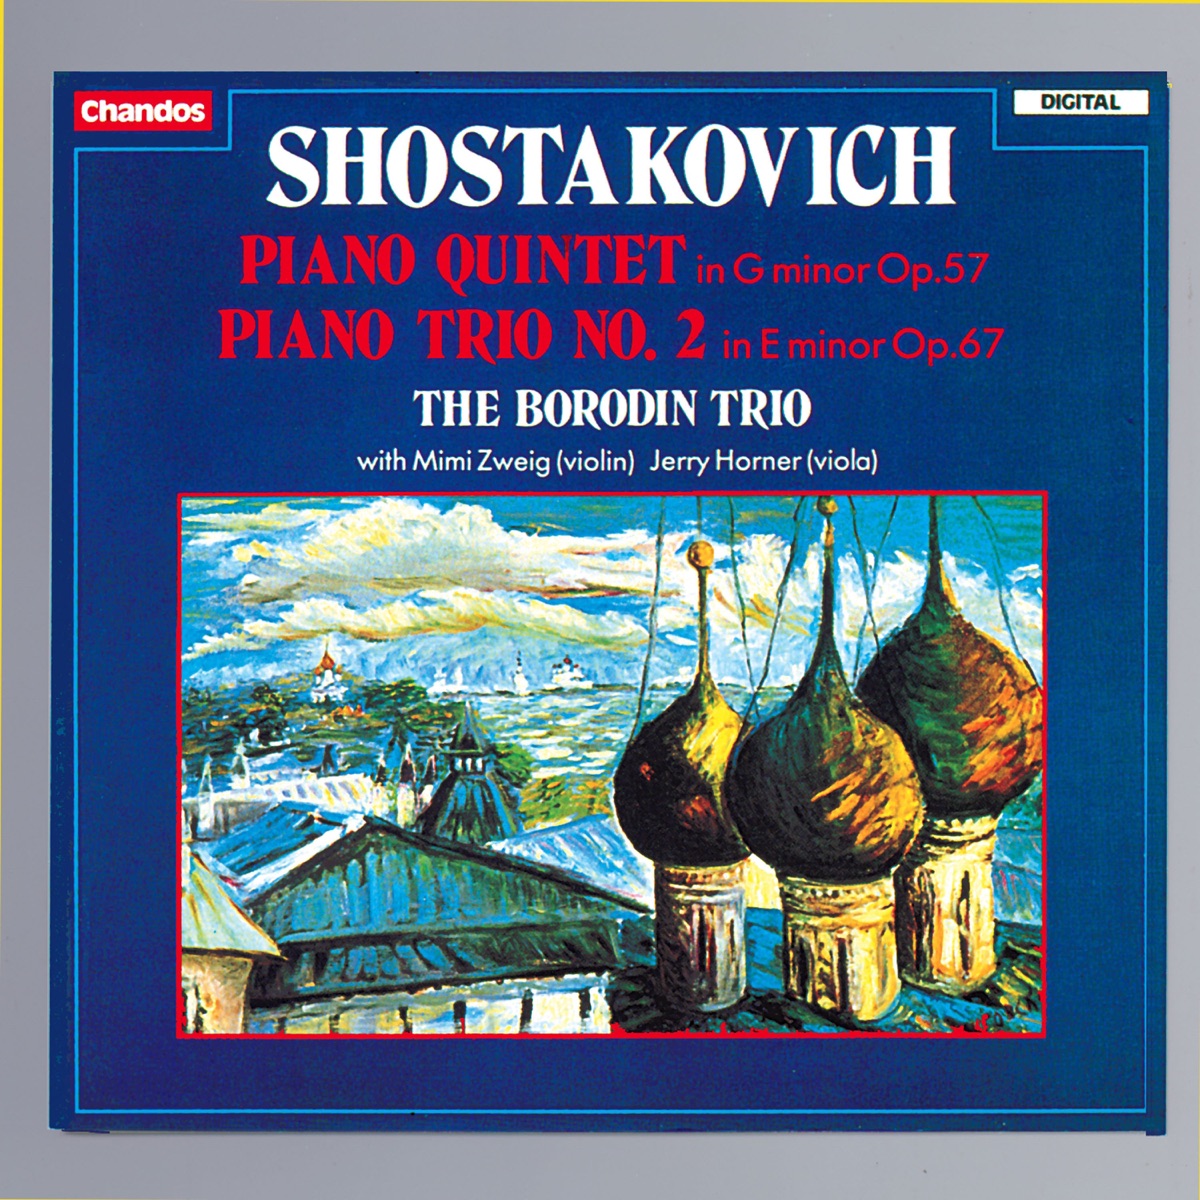 Shostakovich: Piano Quintet & Piano Trio No. 2 by Borodin Trio, Jerry  Horner & Mimi Zweig on Apple Music